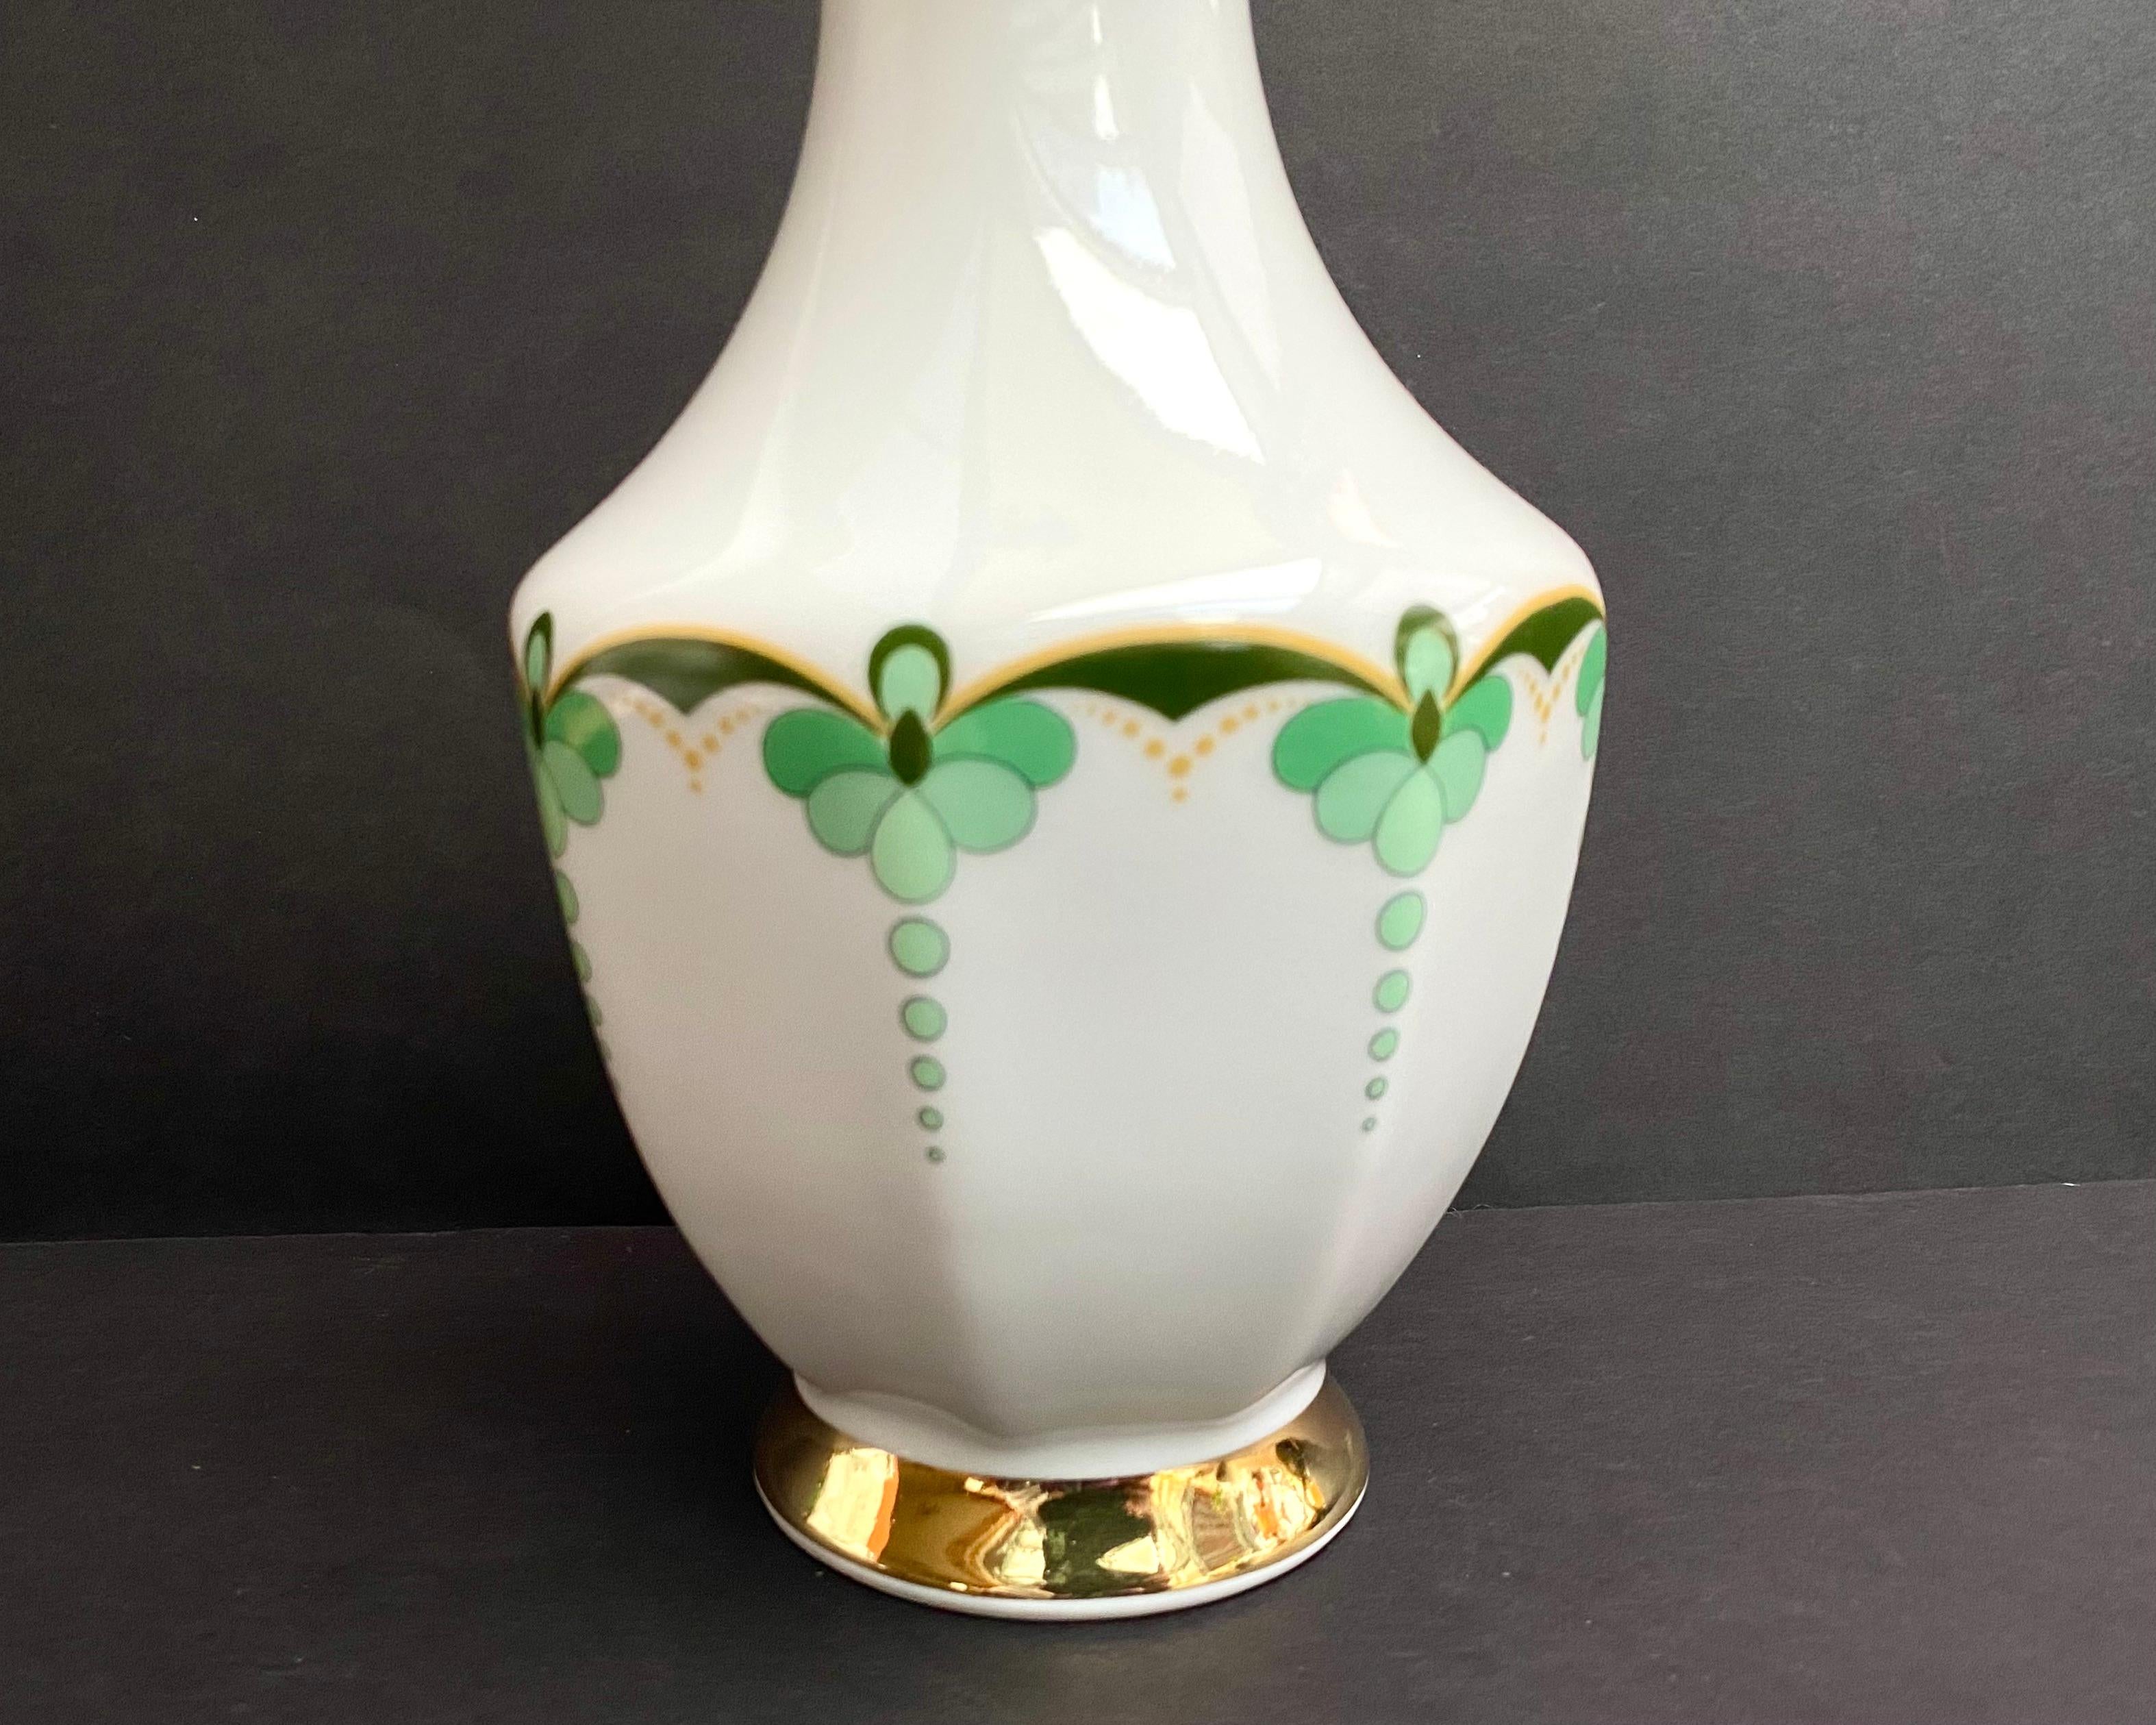 Magnifique vase/jarre vintage en porcelaine avec décor floral vert et plaqué or de Vohenstrauss Johann Seltmann Bavaria

Circa 1970, fabriqué en Allemagne.

Estampillé et numéroté sur le fond.

Motif floral peint à la main.

Avec ce vase, vous